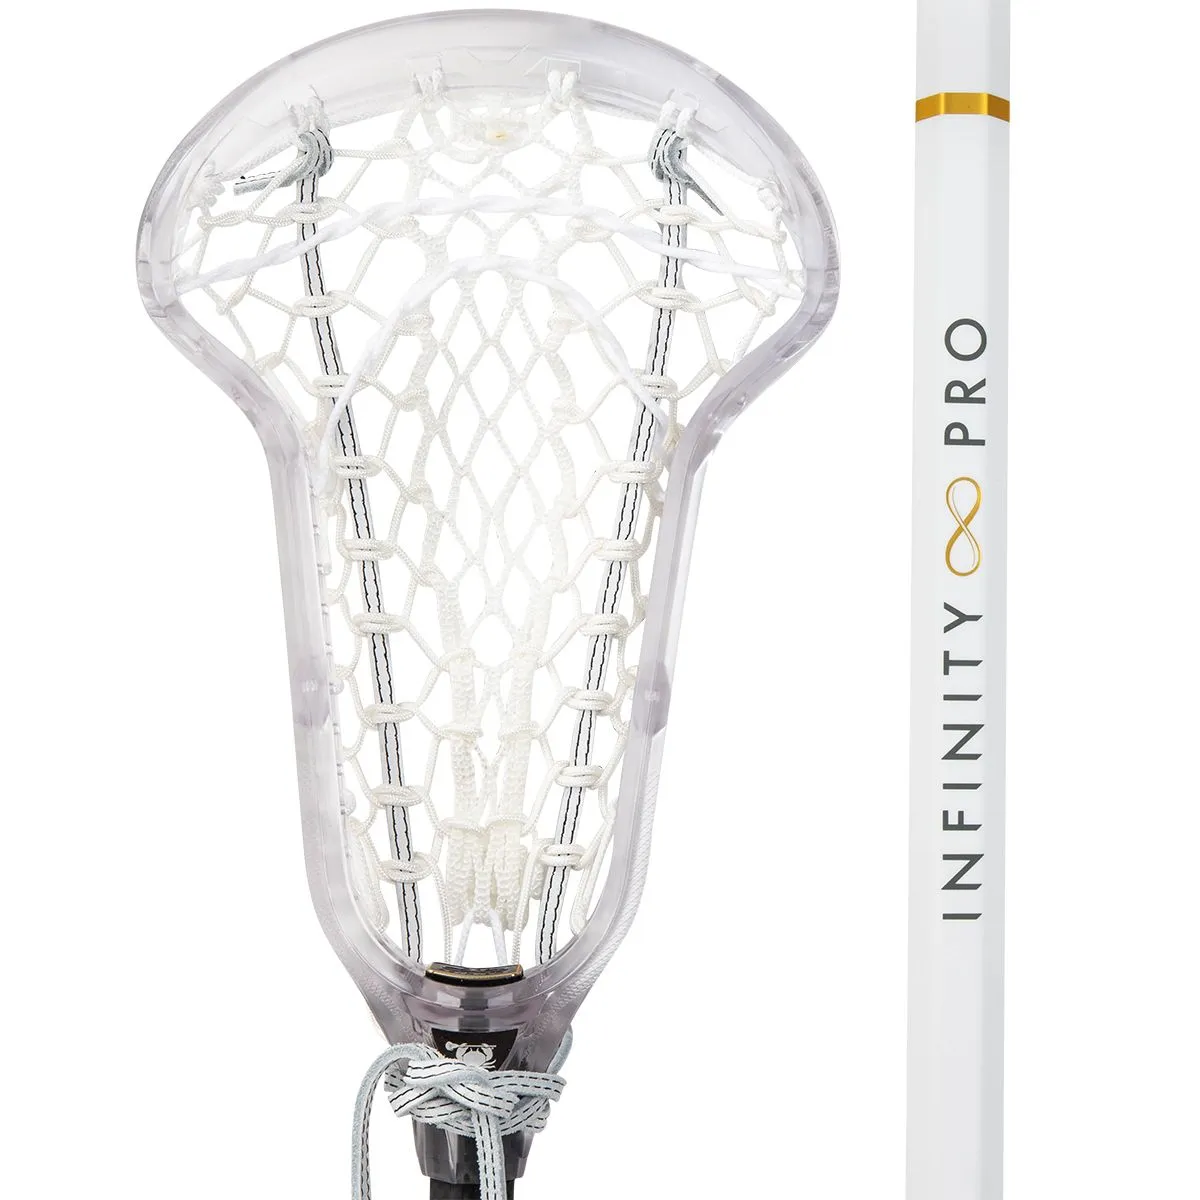 ecd infinity pro women's lacrosse stick